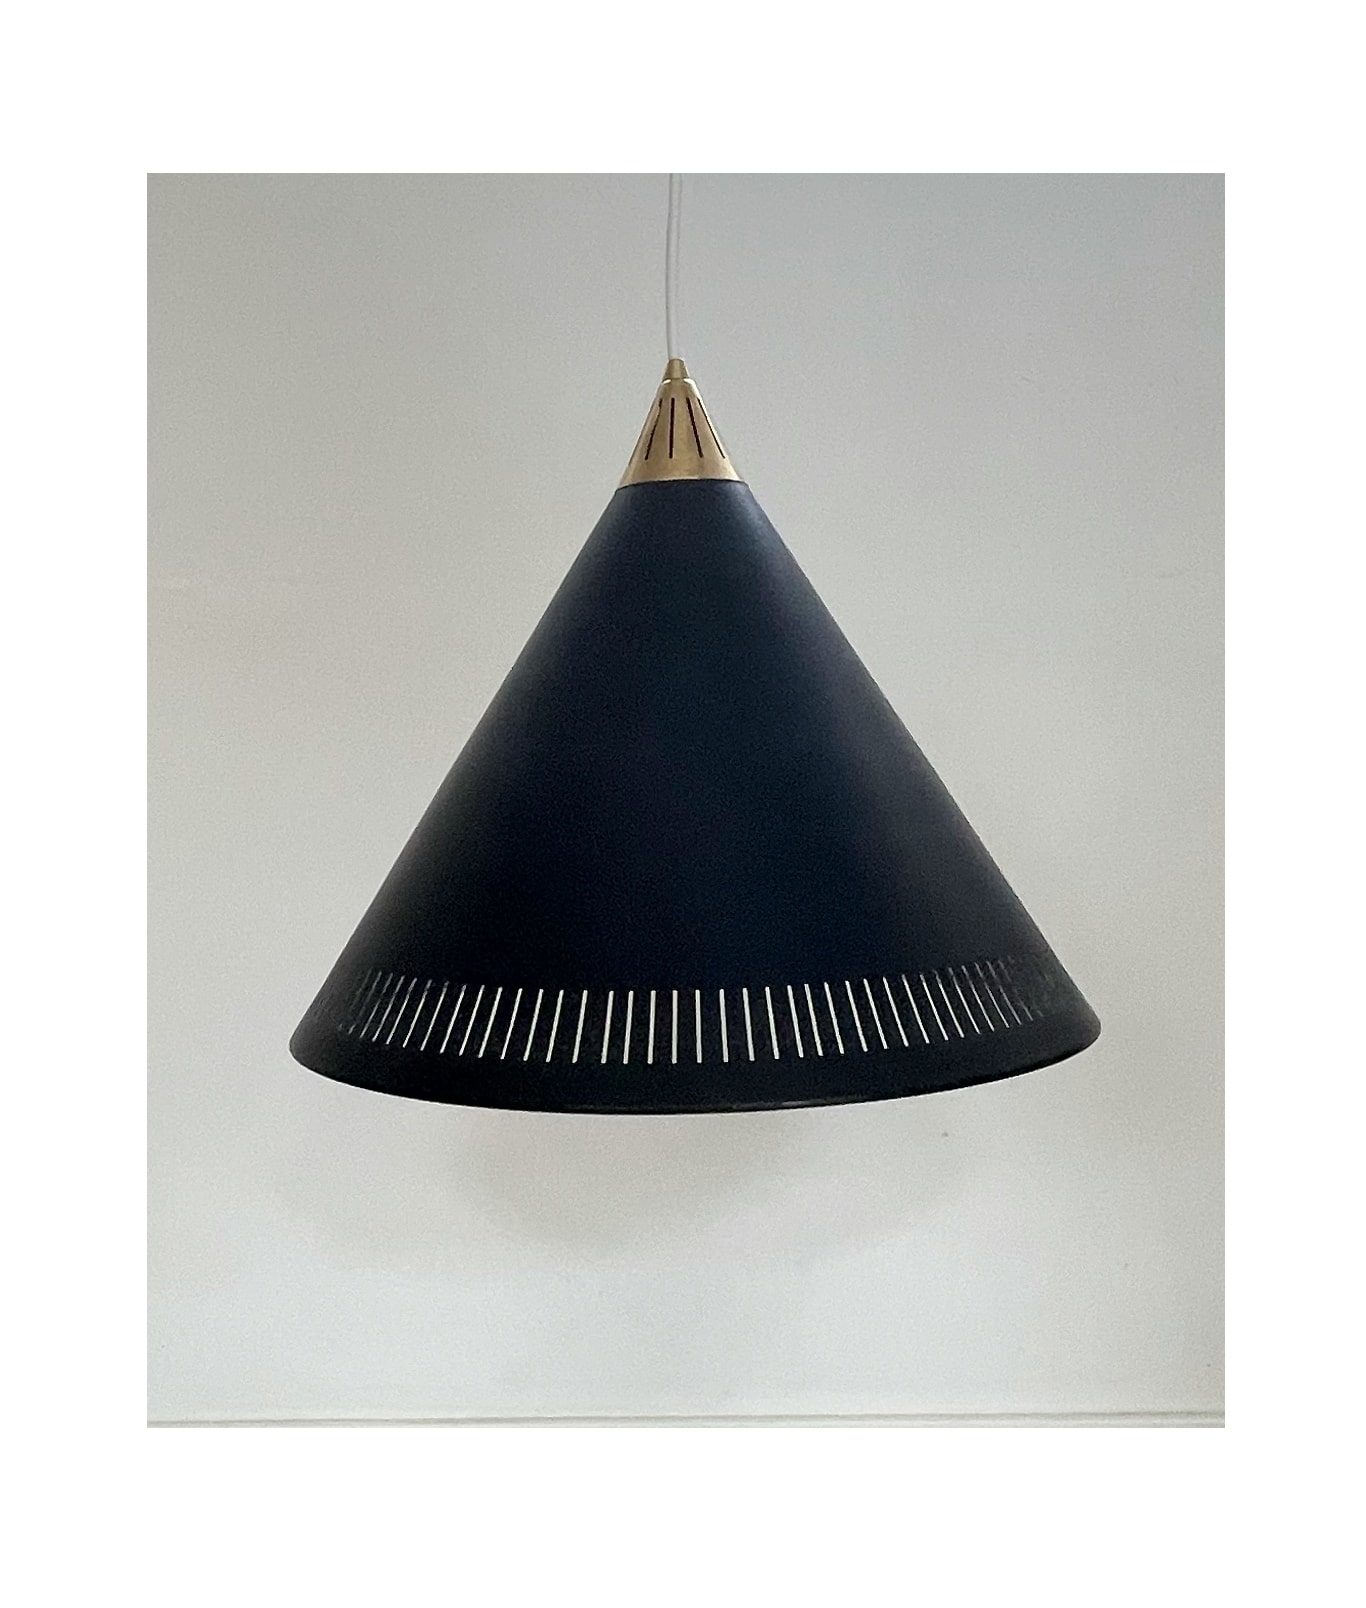 Black conicle 'Kegle' pendant lamp, Bent for Lyfa, 60s